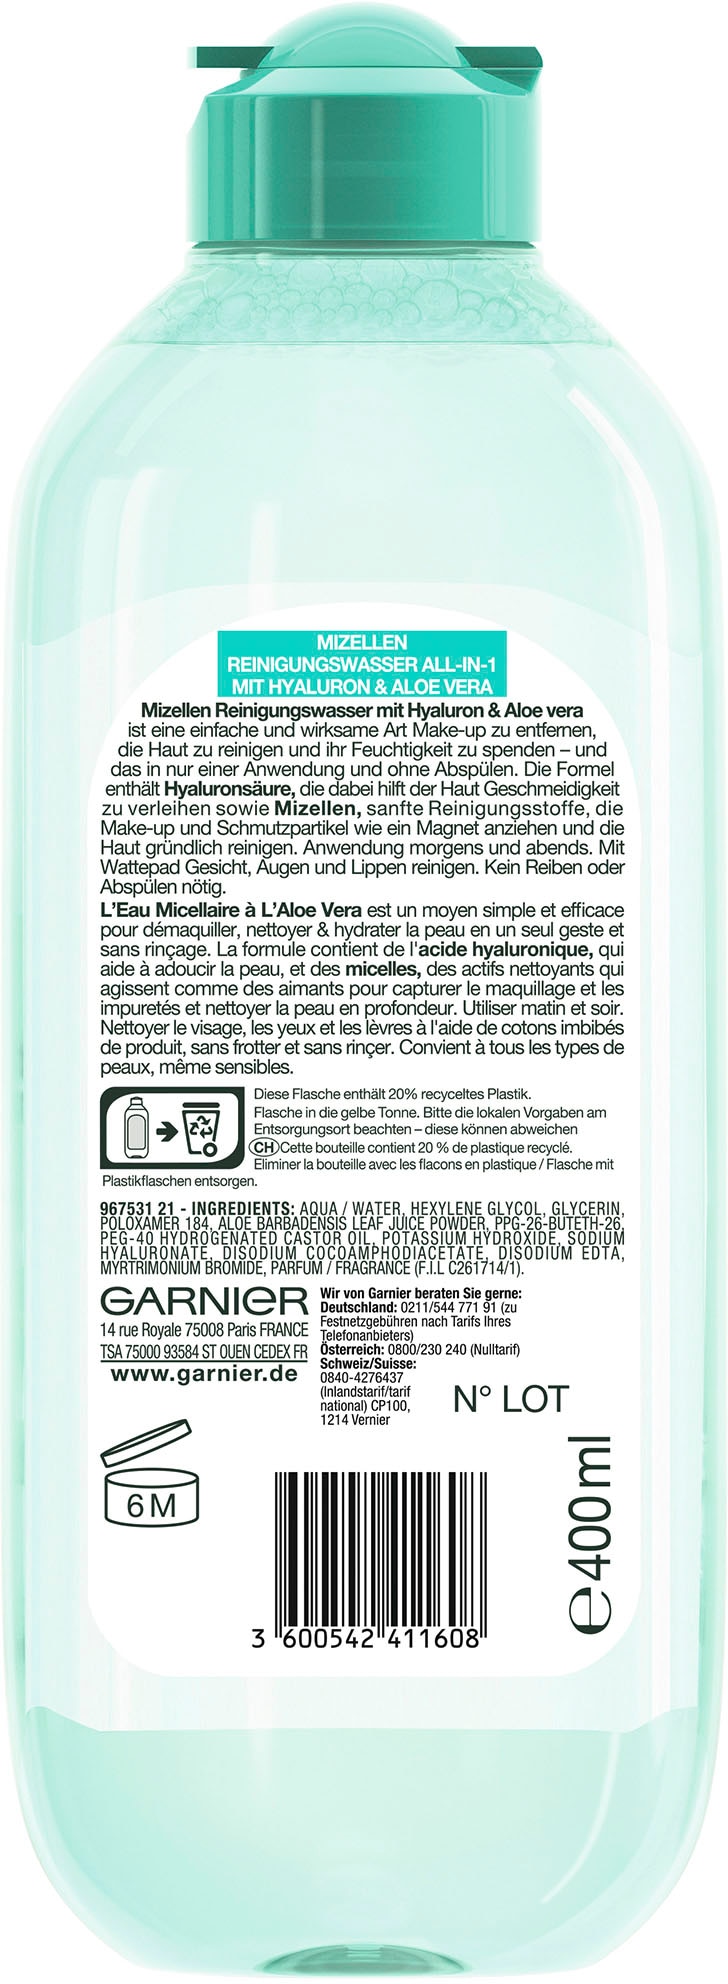 GARNIER Gesichtswasser Reinigungswasser »Mizellen All-in-1